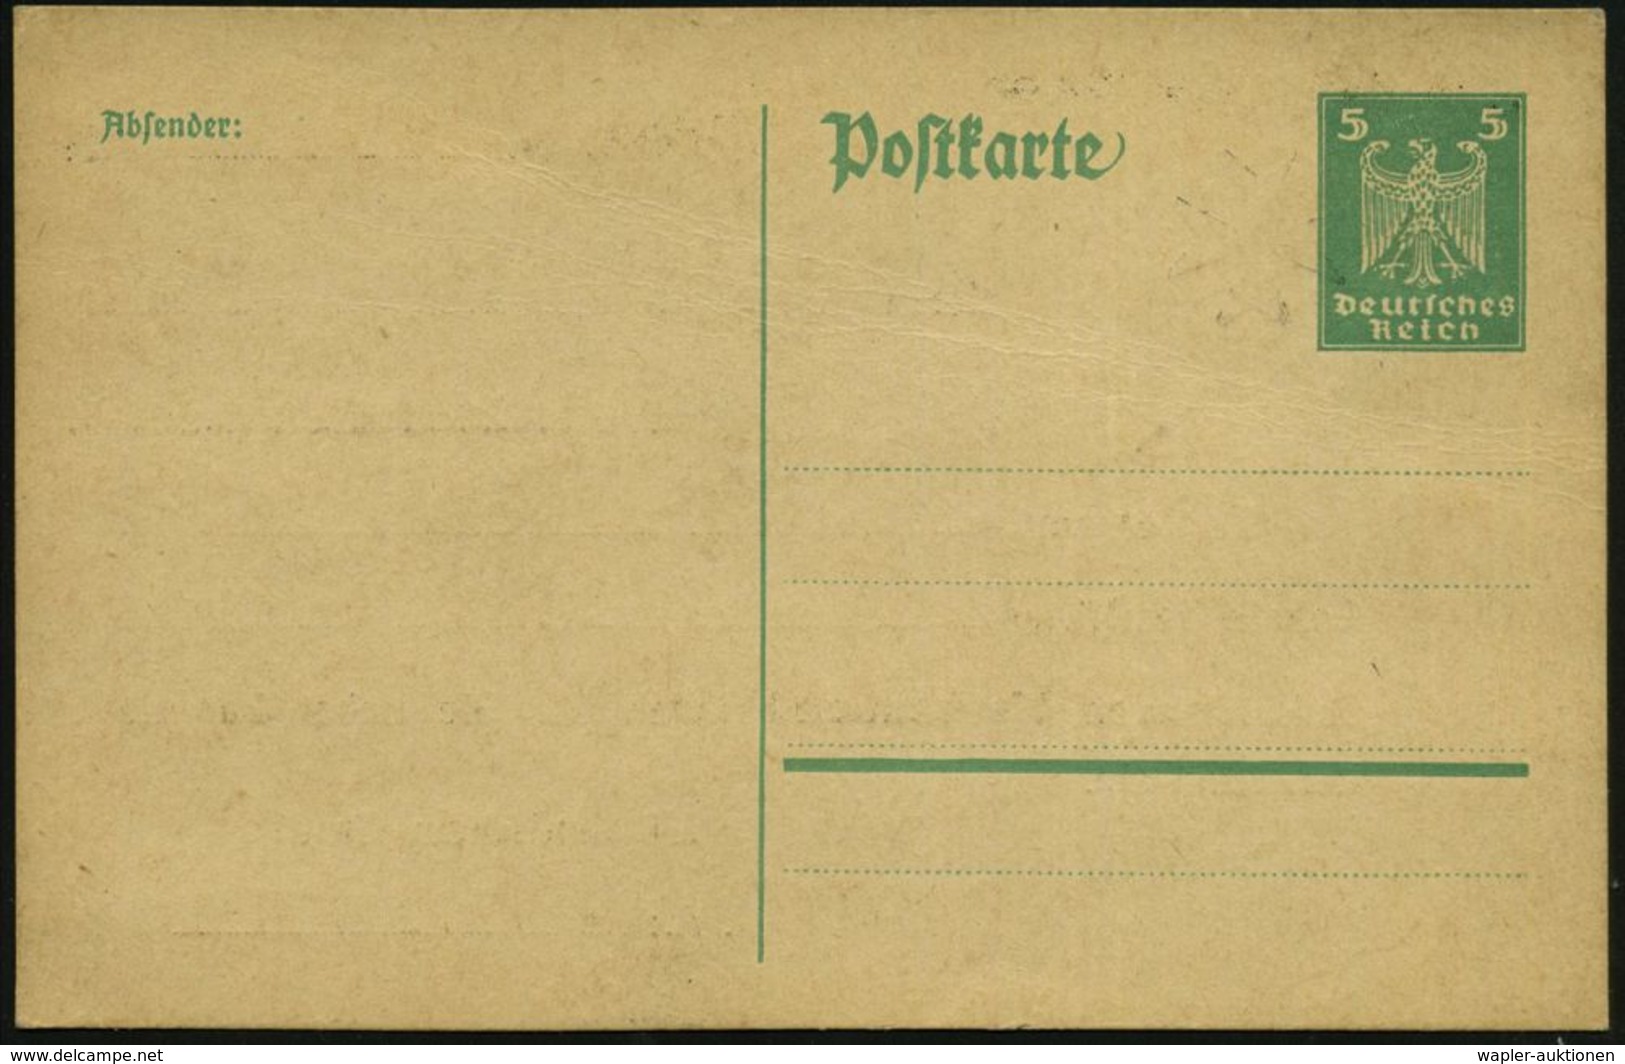 Pelkum 1925 Amtl. Inl.-P 5 Pf. Adler, Grün + Rs. Zudruck: Jungdeutscher Orden = Antibolschewistisch, Antisemitisch, Bete - Altri & Non Classificati